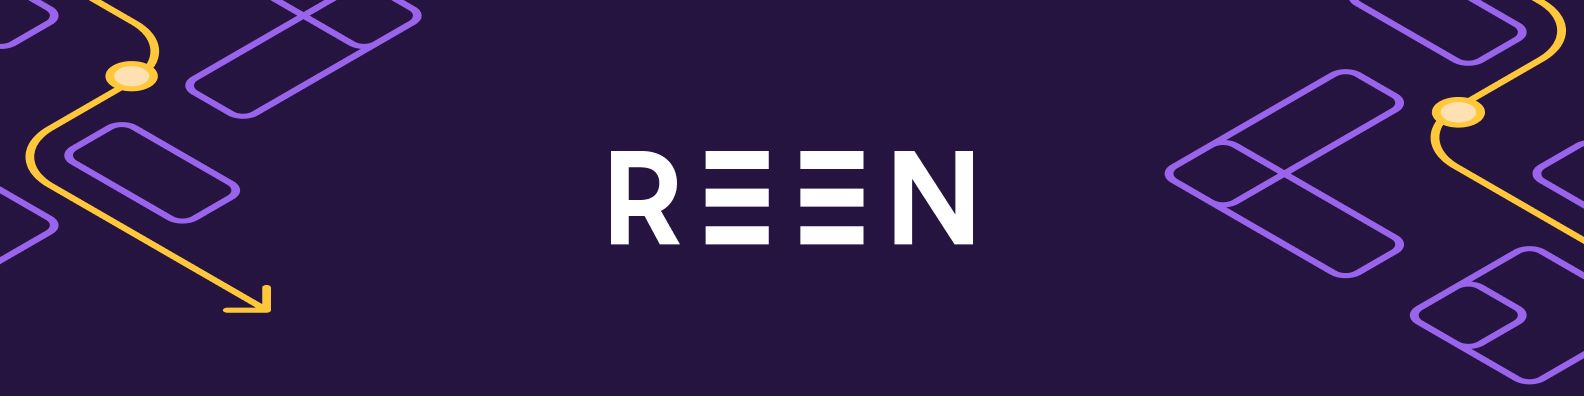 REEN Technologies Ltd